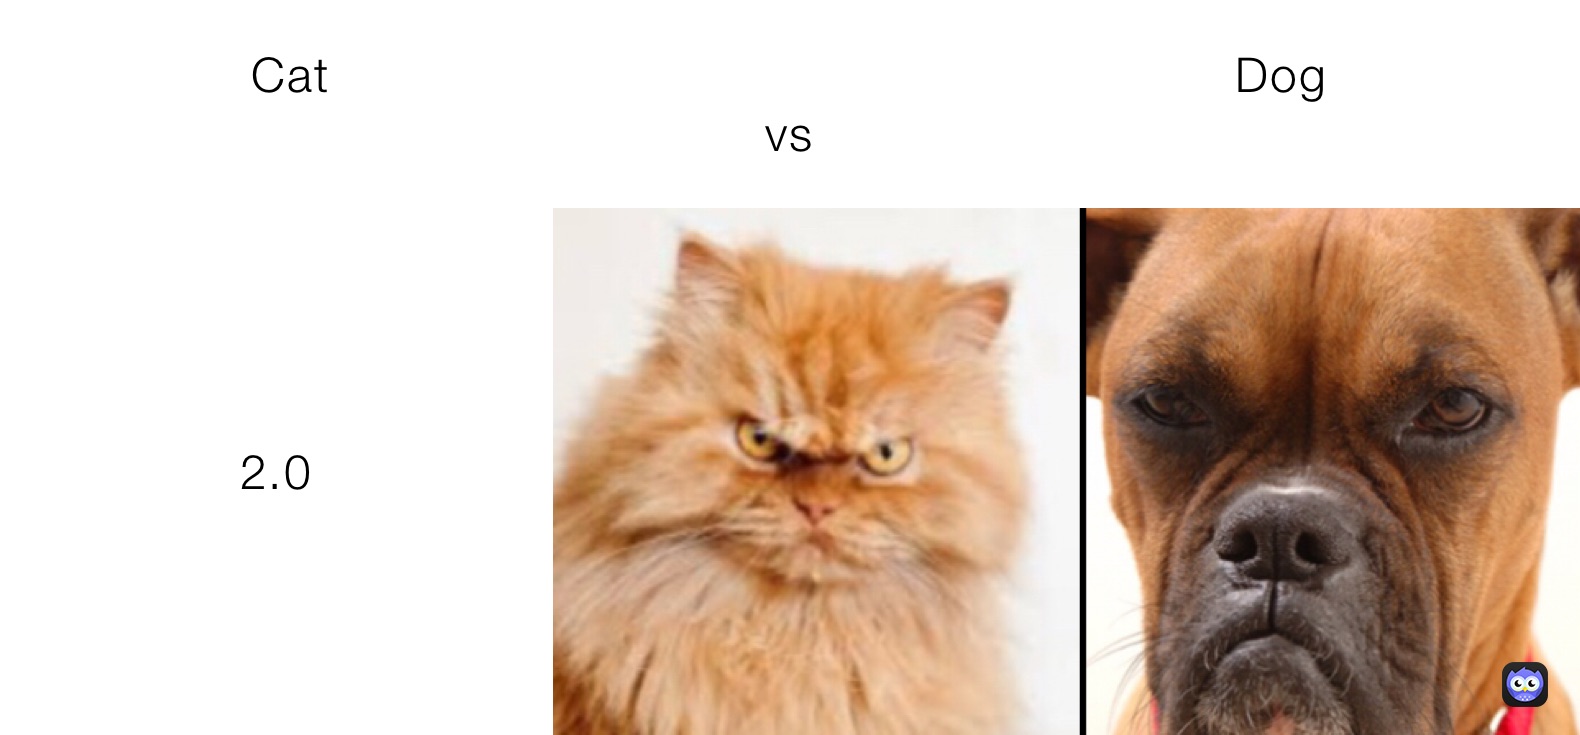 Cat                                                           Dog                                                   vs 2.0